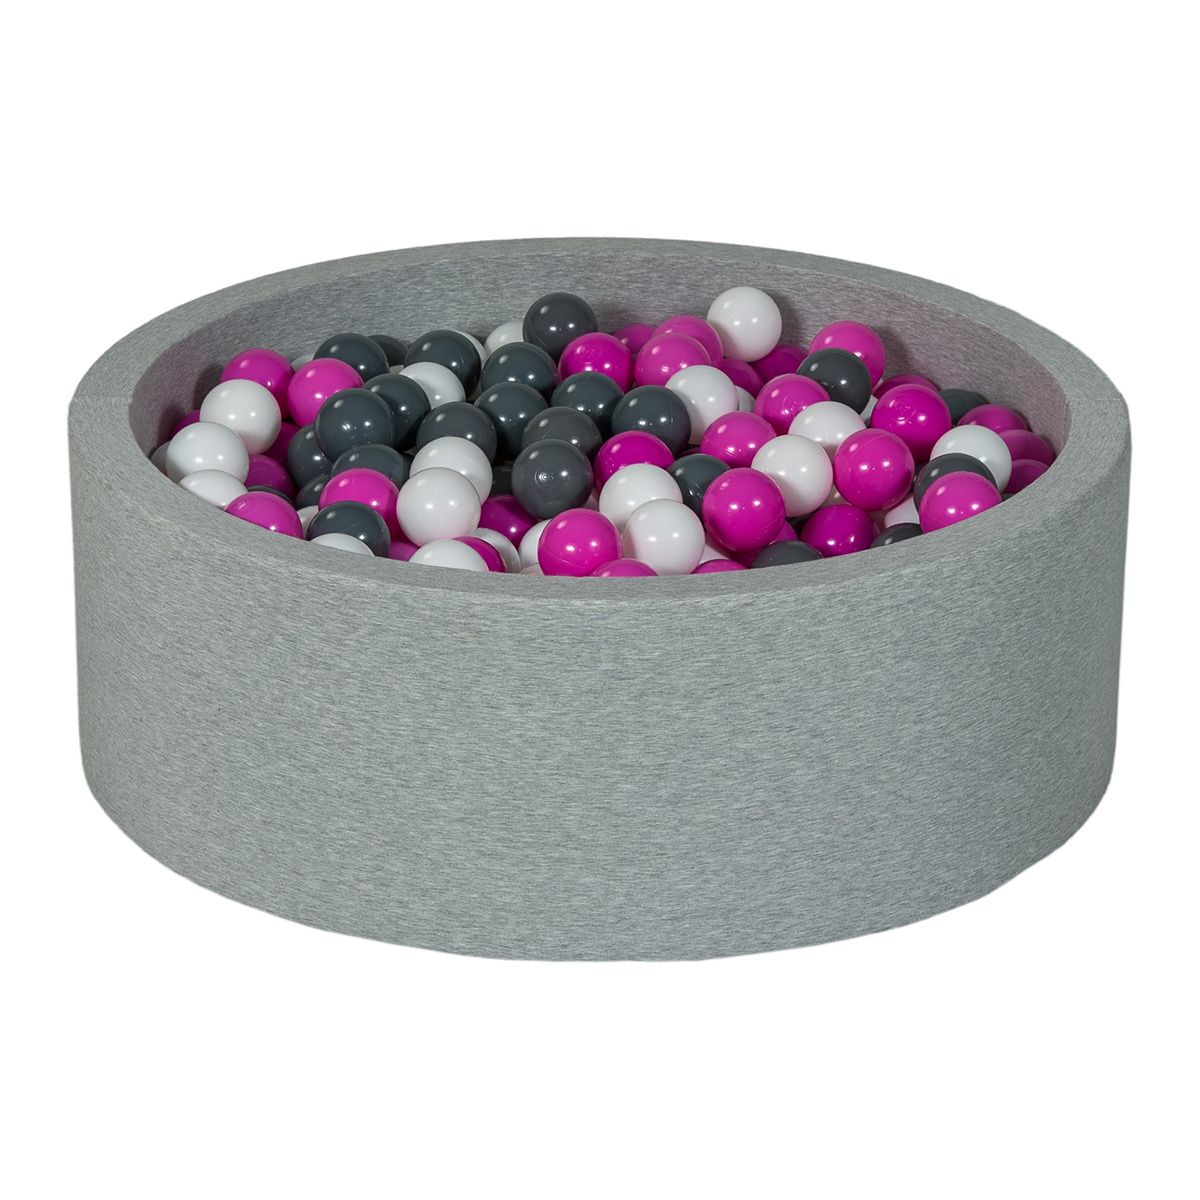  Piscine à balles Aire de jeu + 450 balles blanc, rose, gris